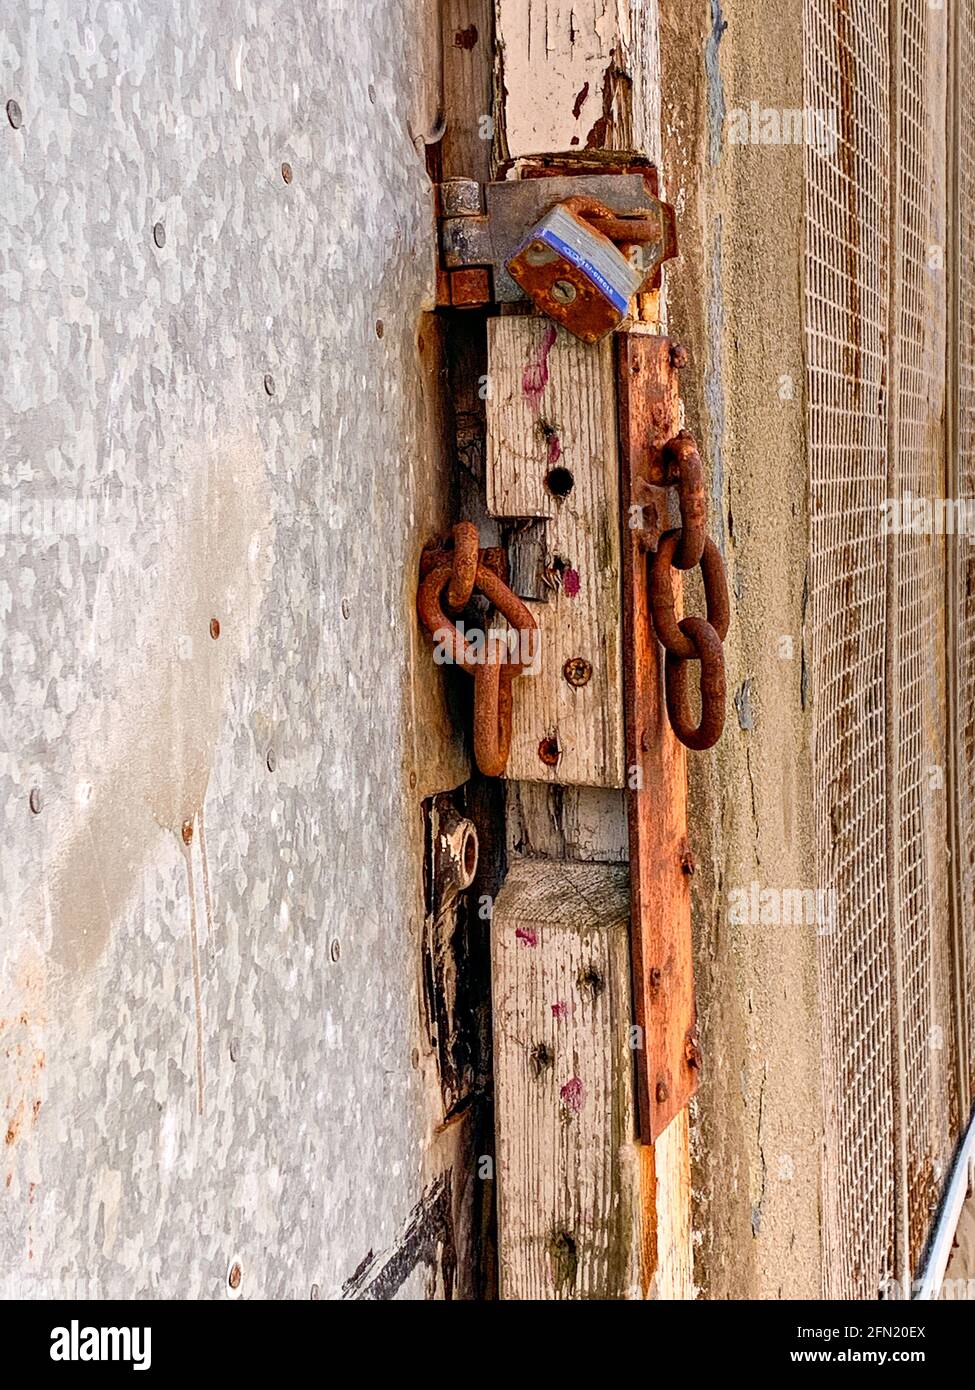 Broken chain and rusted padlock on exterior door Stock Photo